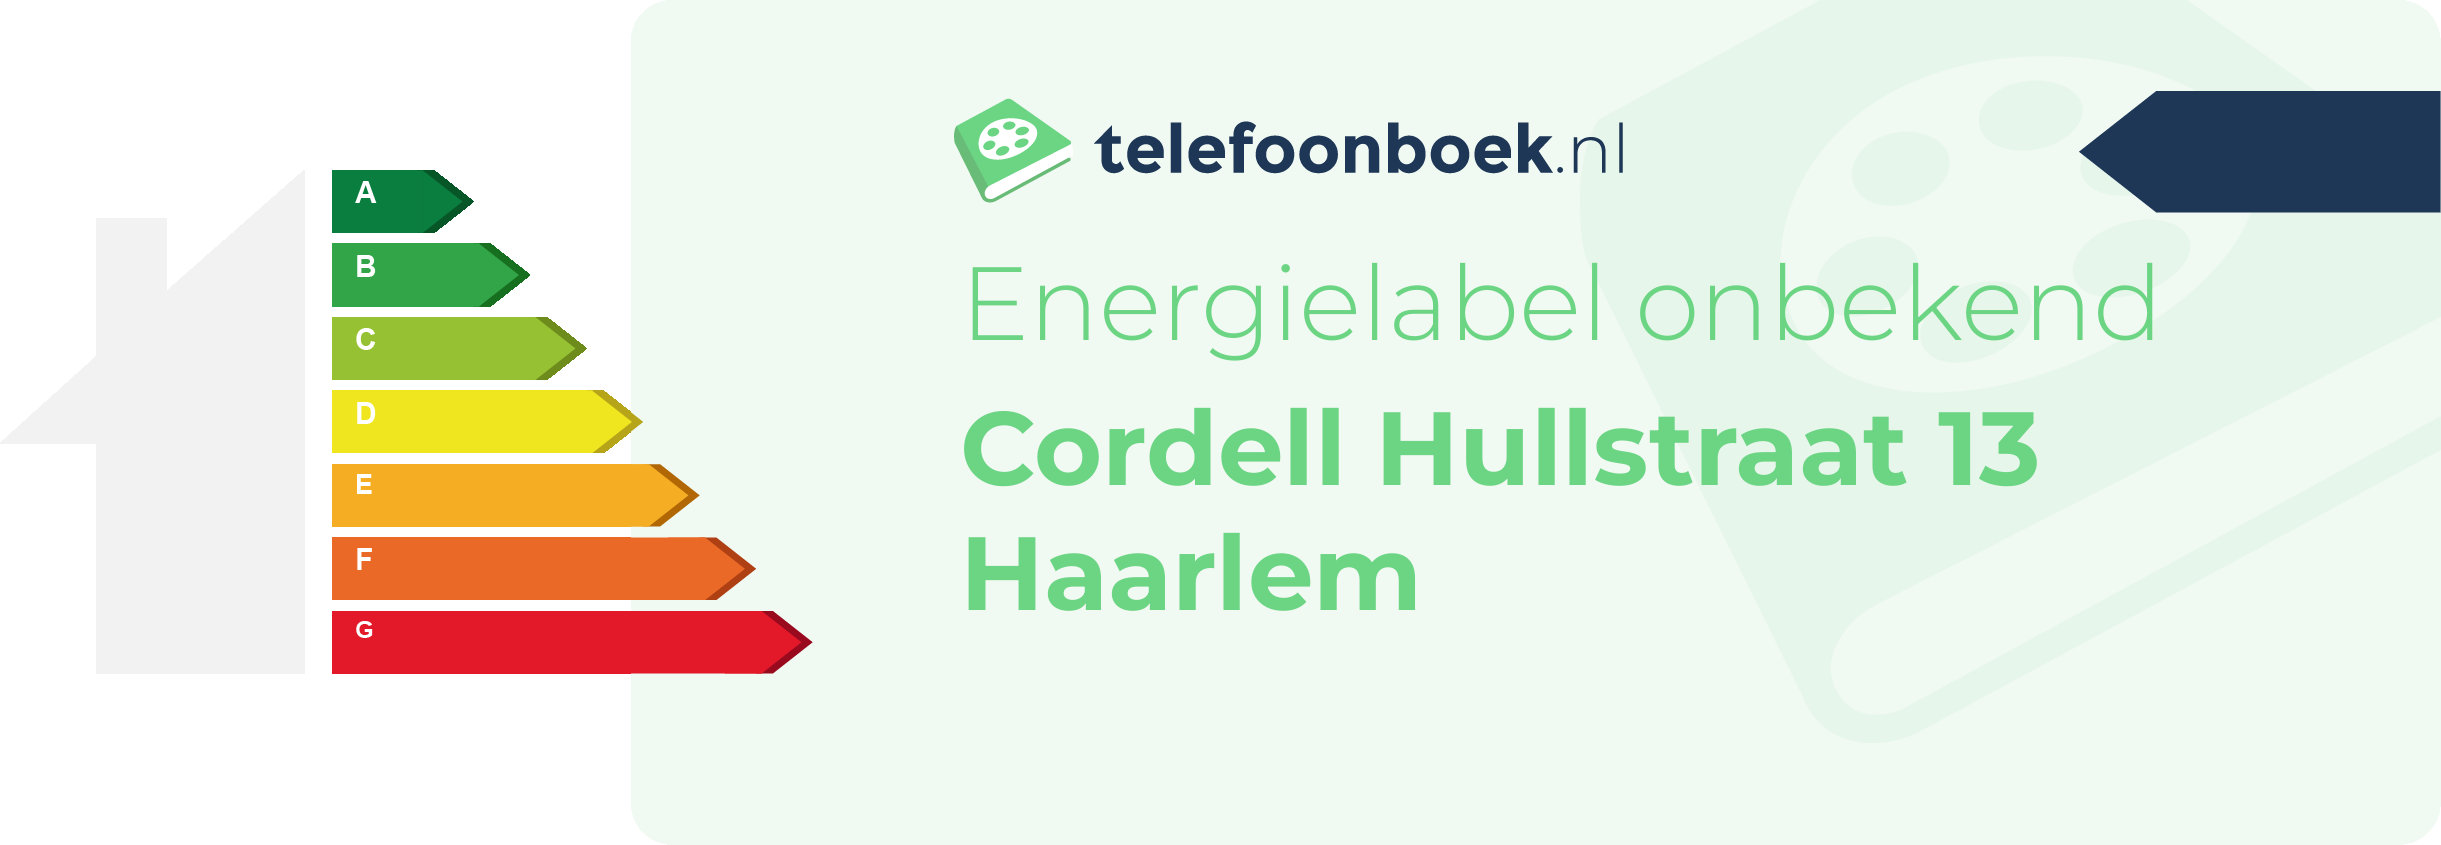 Energielabel Cordell Hullstraat 13 Haarlem